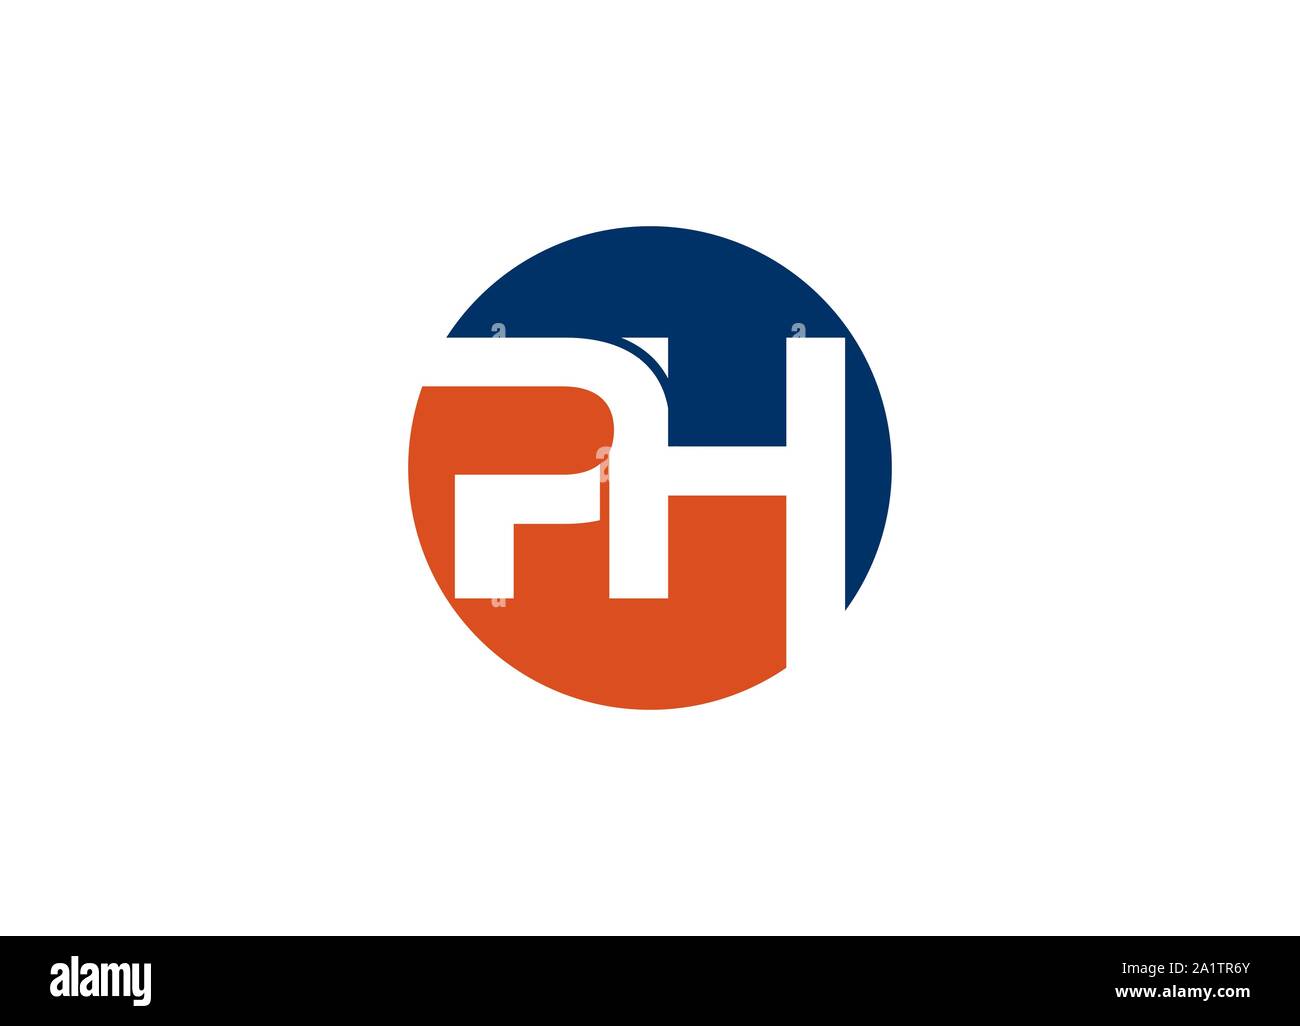 PH lettera logo del marchio e il logo di PH Illustrazione Vettoriale